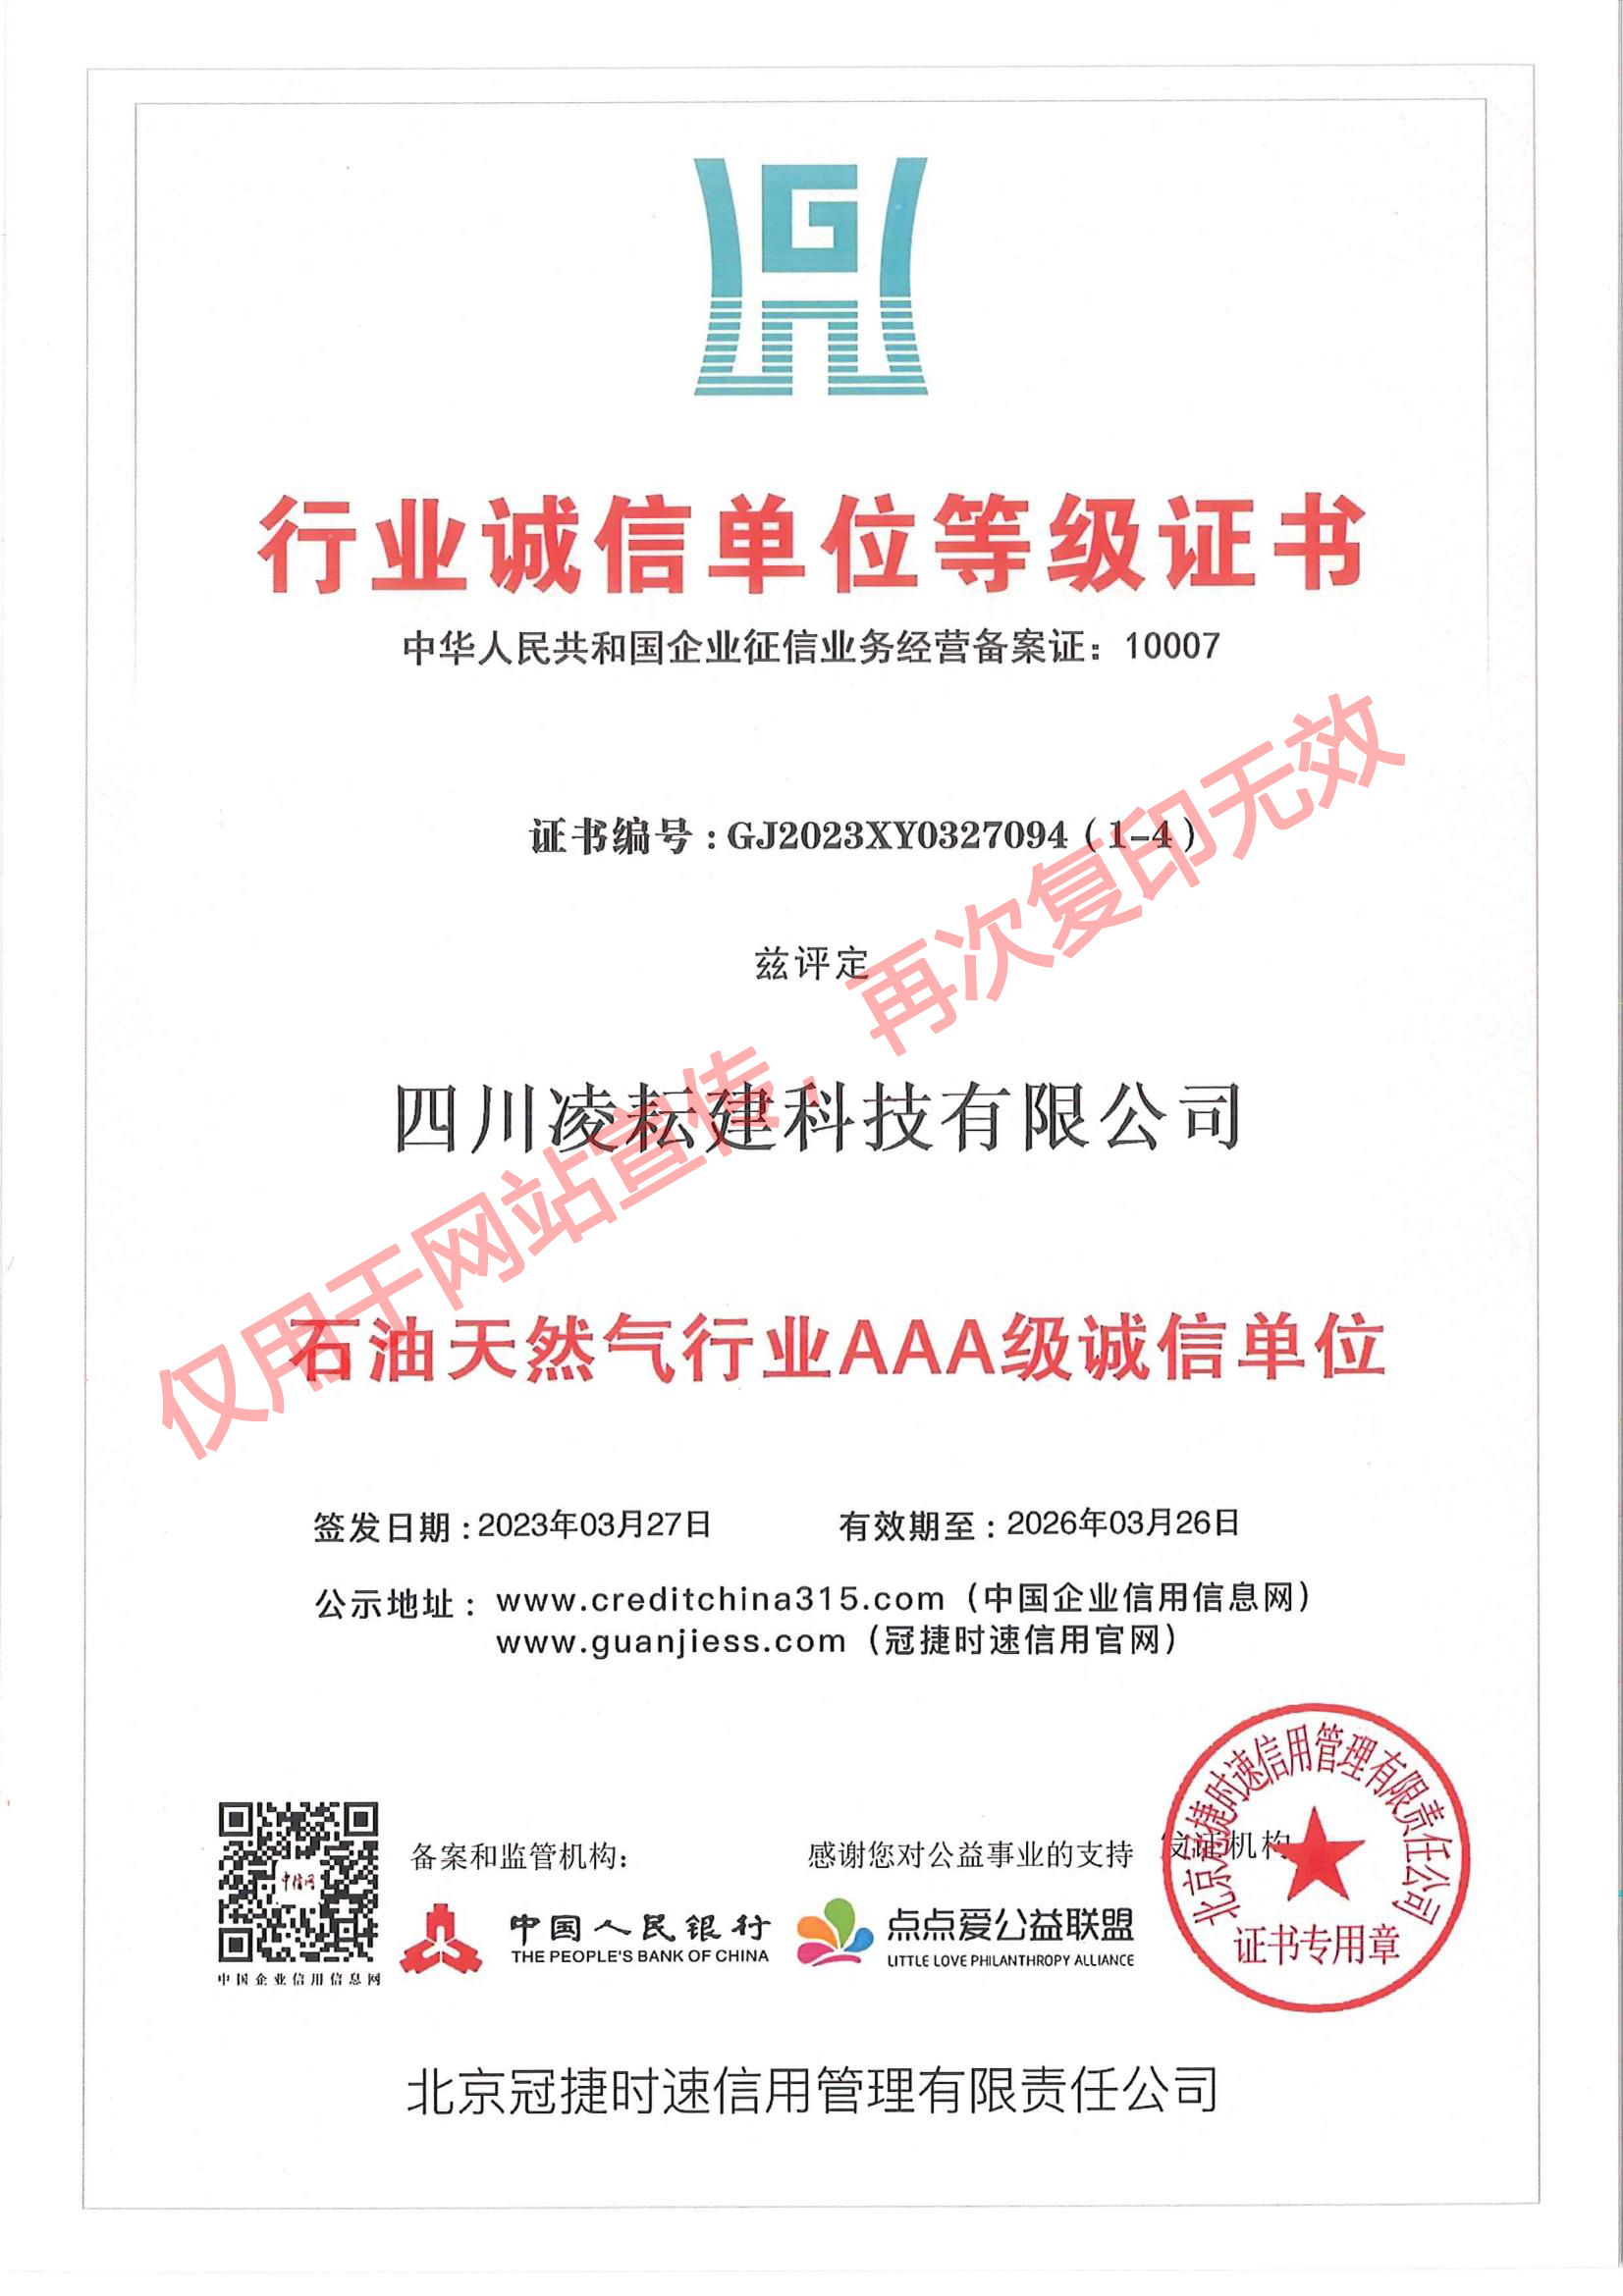 LYJ-042 行业诚信单位等级证书（石油天然气行业AAA级诚信单位）北京冠捷时速_00.jpg